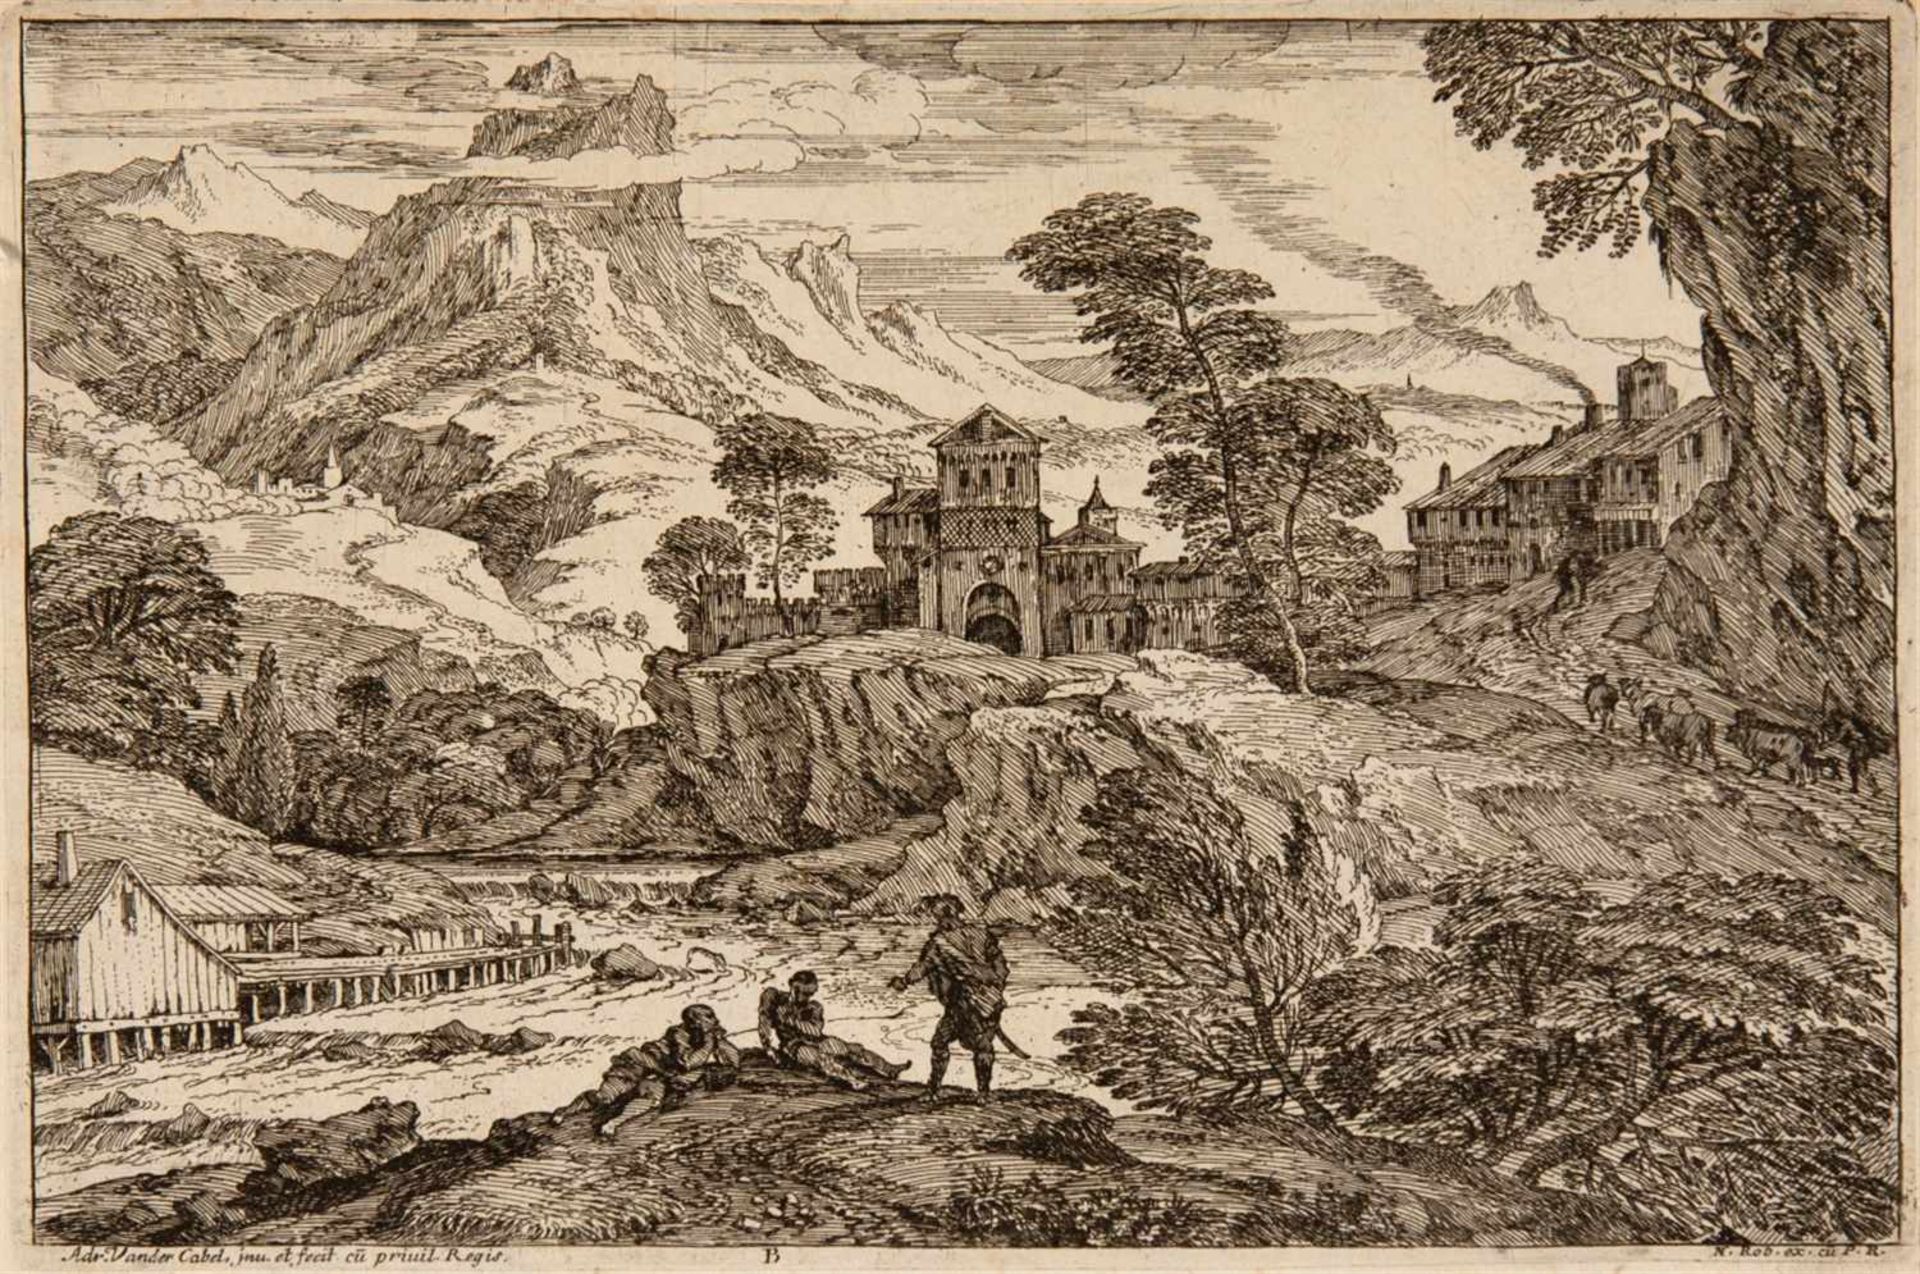 ADRIAN VAN DER CABELRyswyk 1631 - 1705 Lyon Segonds Livre de Paisages du Sr. Vendrecable. Folge - Image 2 of 6